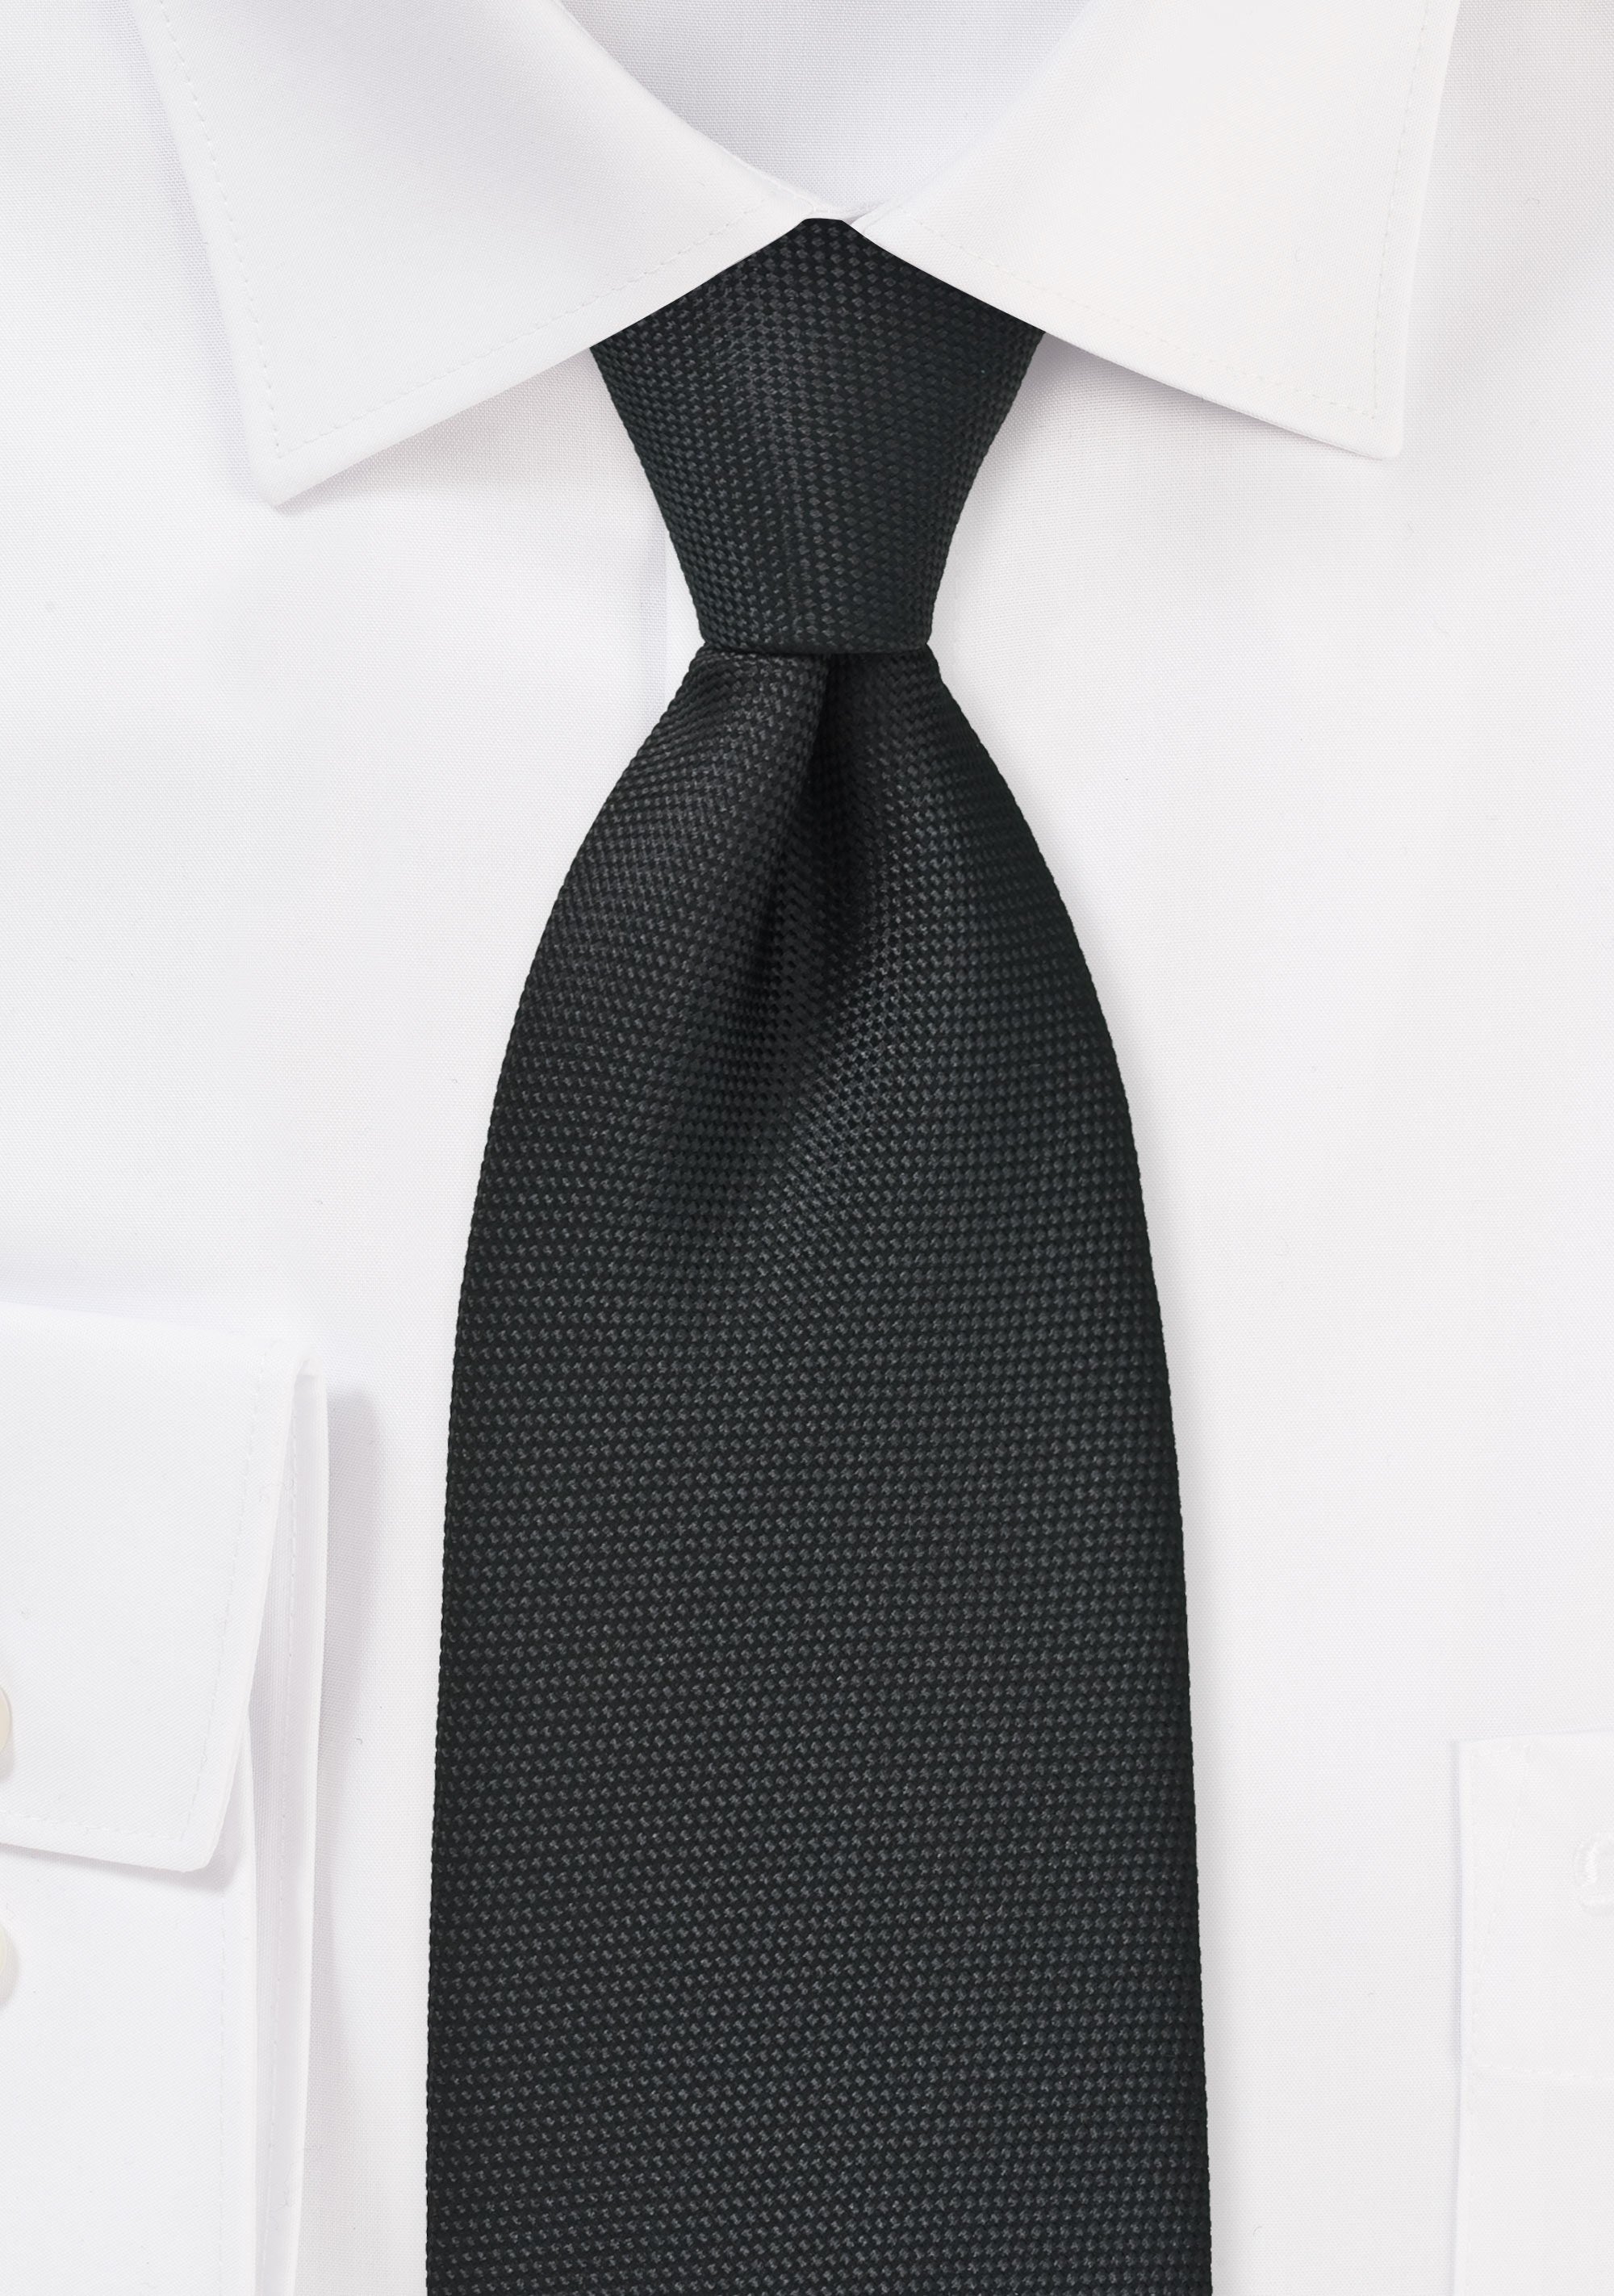 Matte Black MicroTexture Necktie